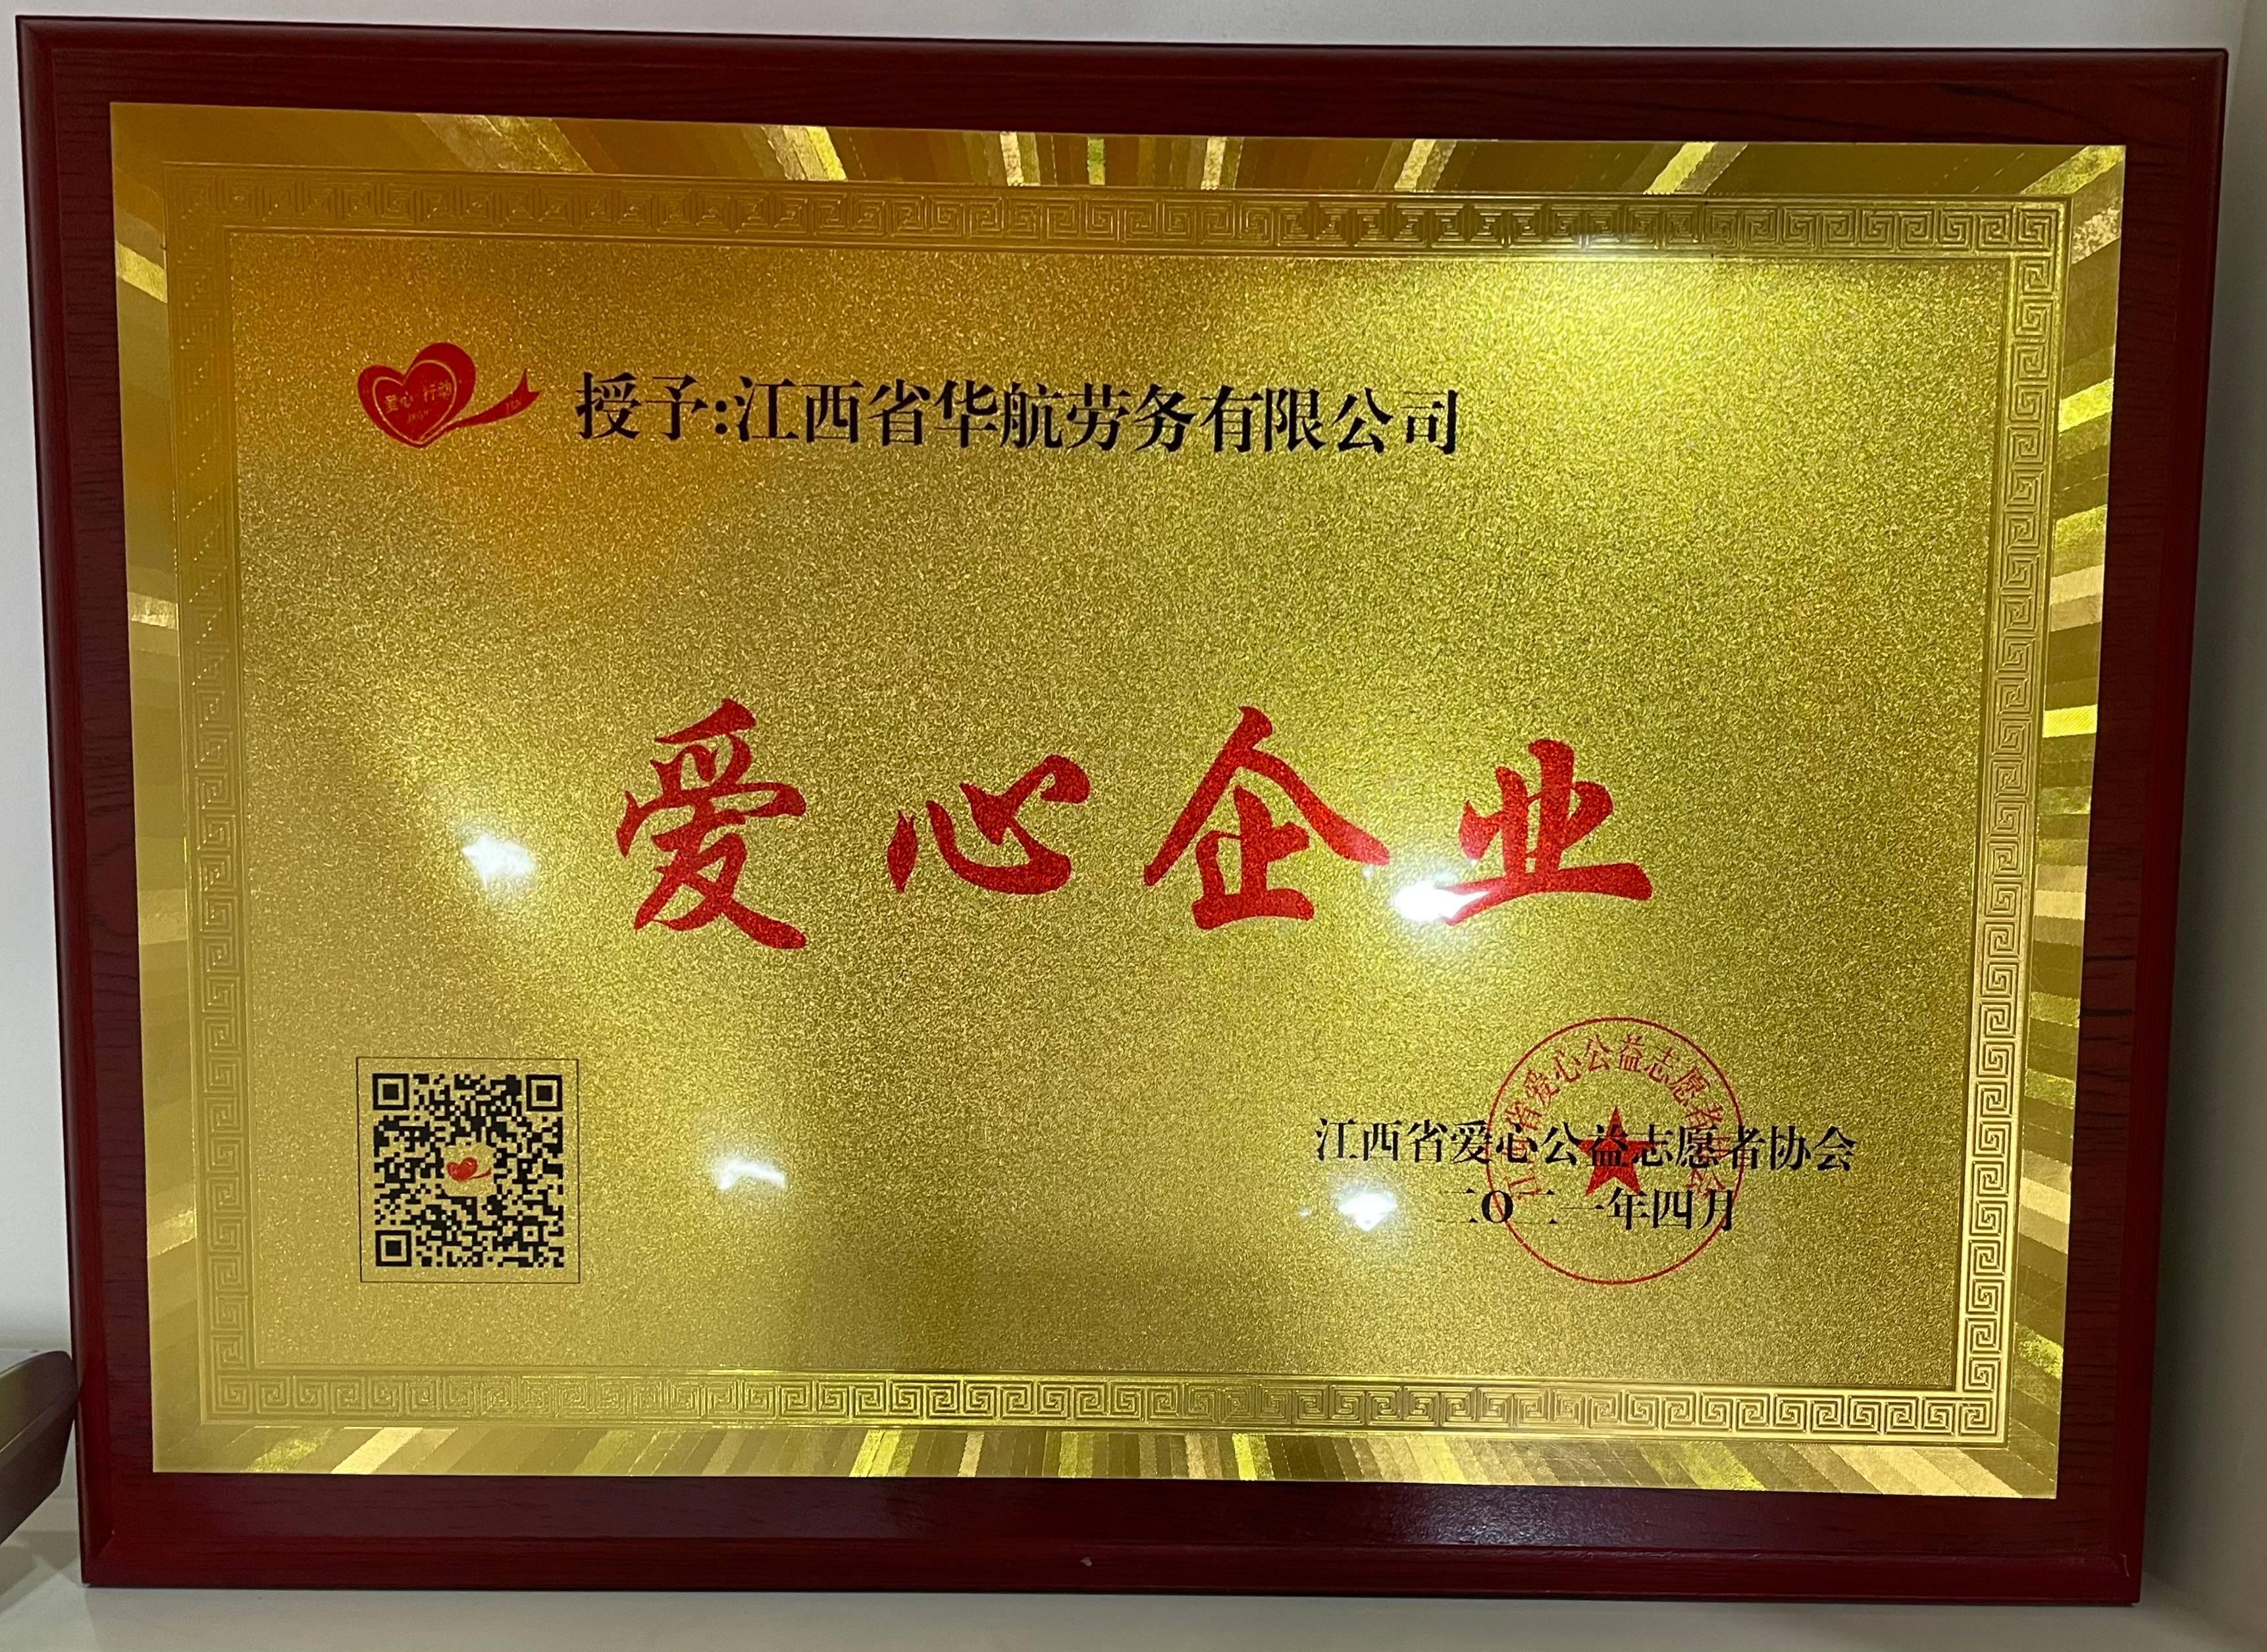 2021年4月，江西省爱心公益志愿者协会授予“爱心企业”荣誉称号